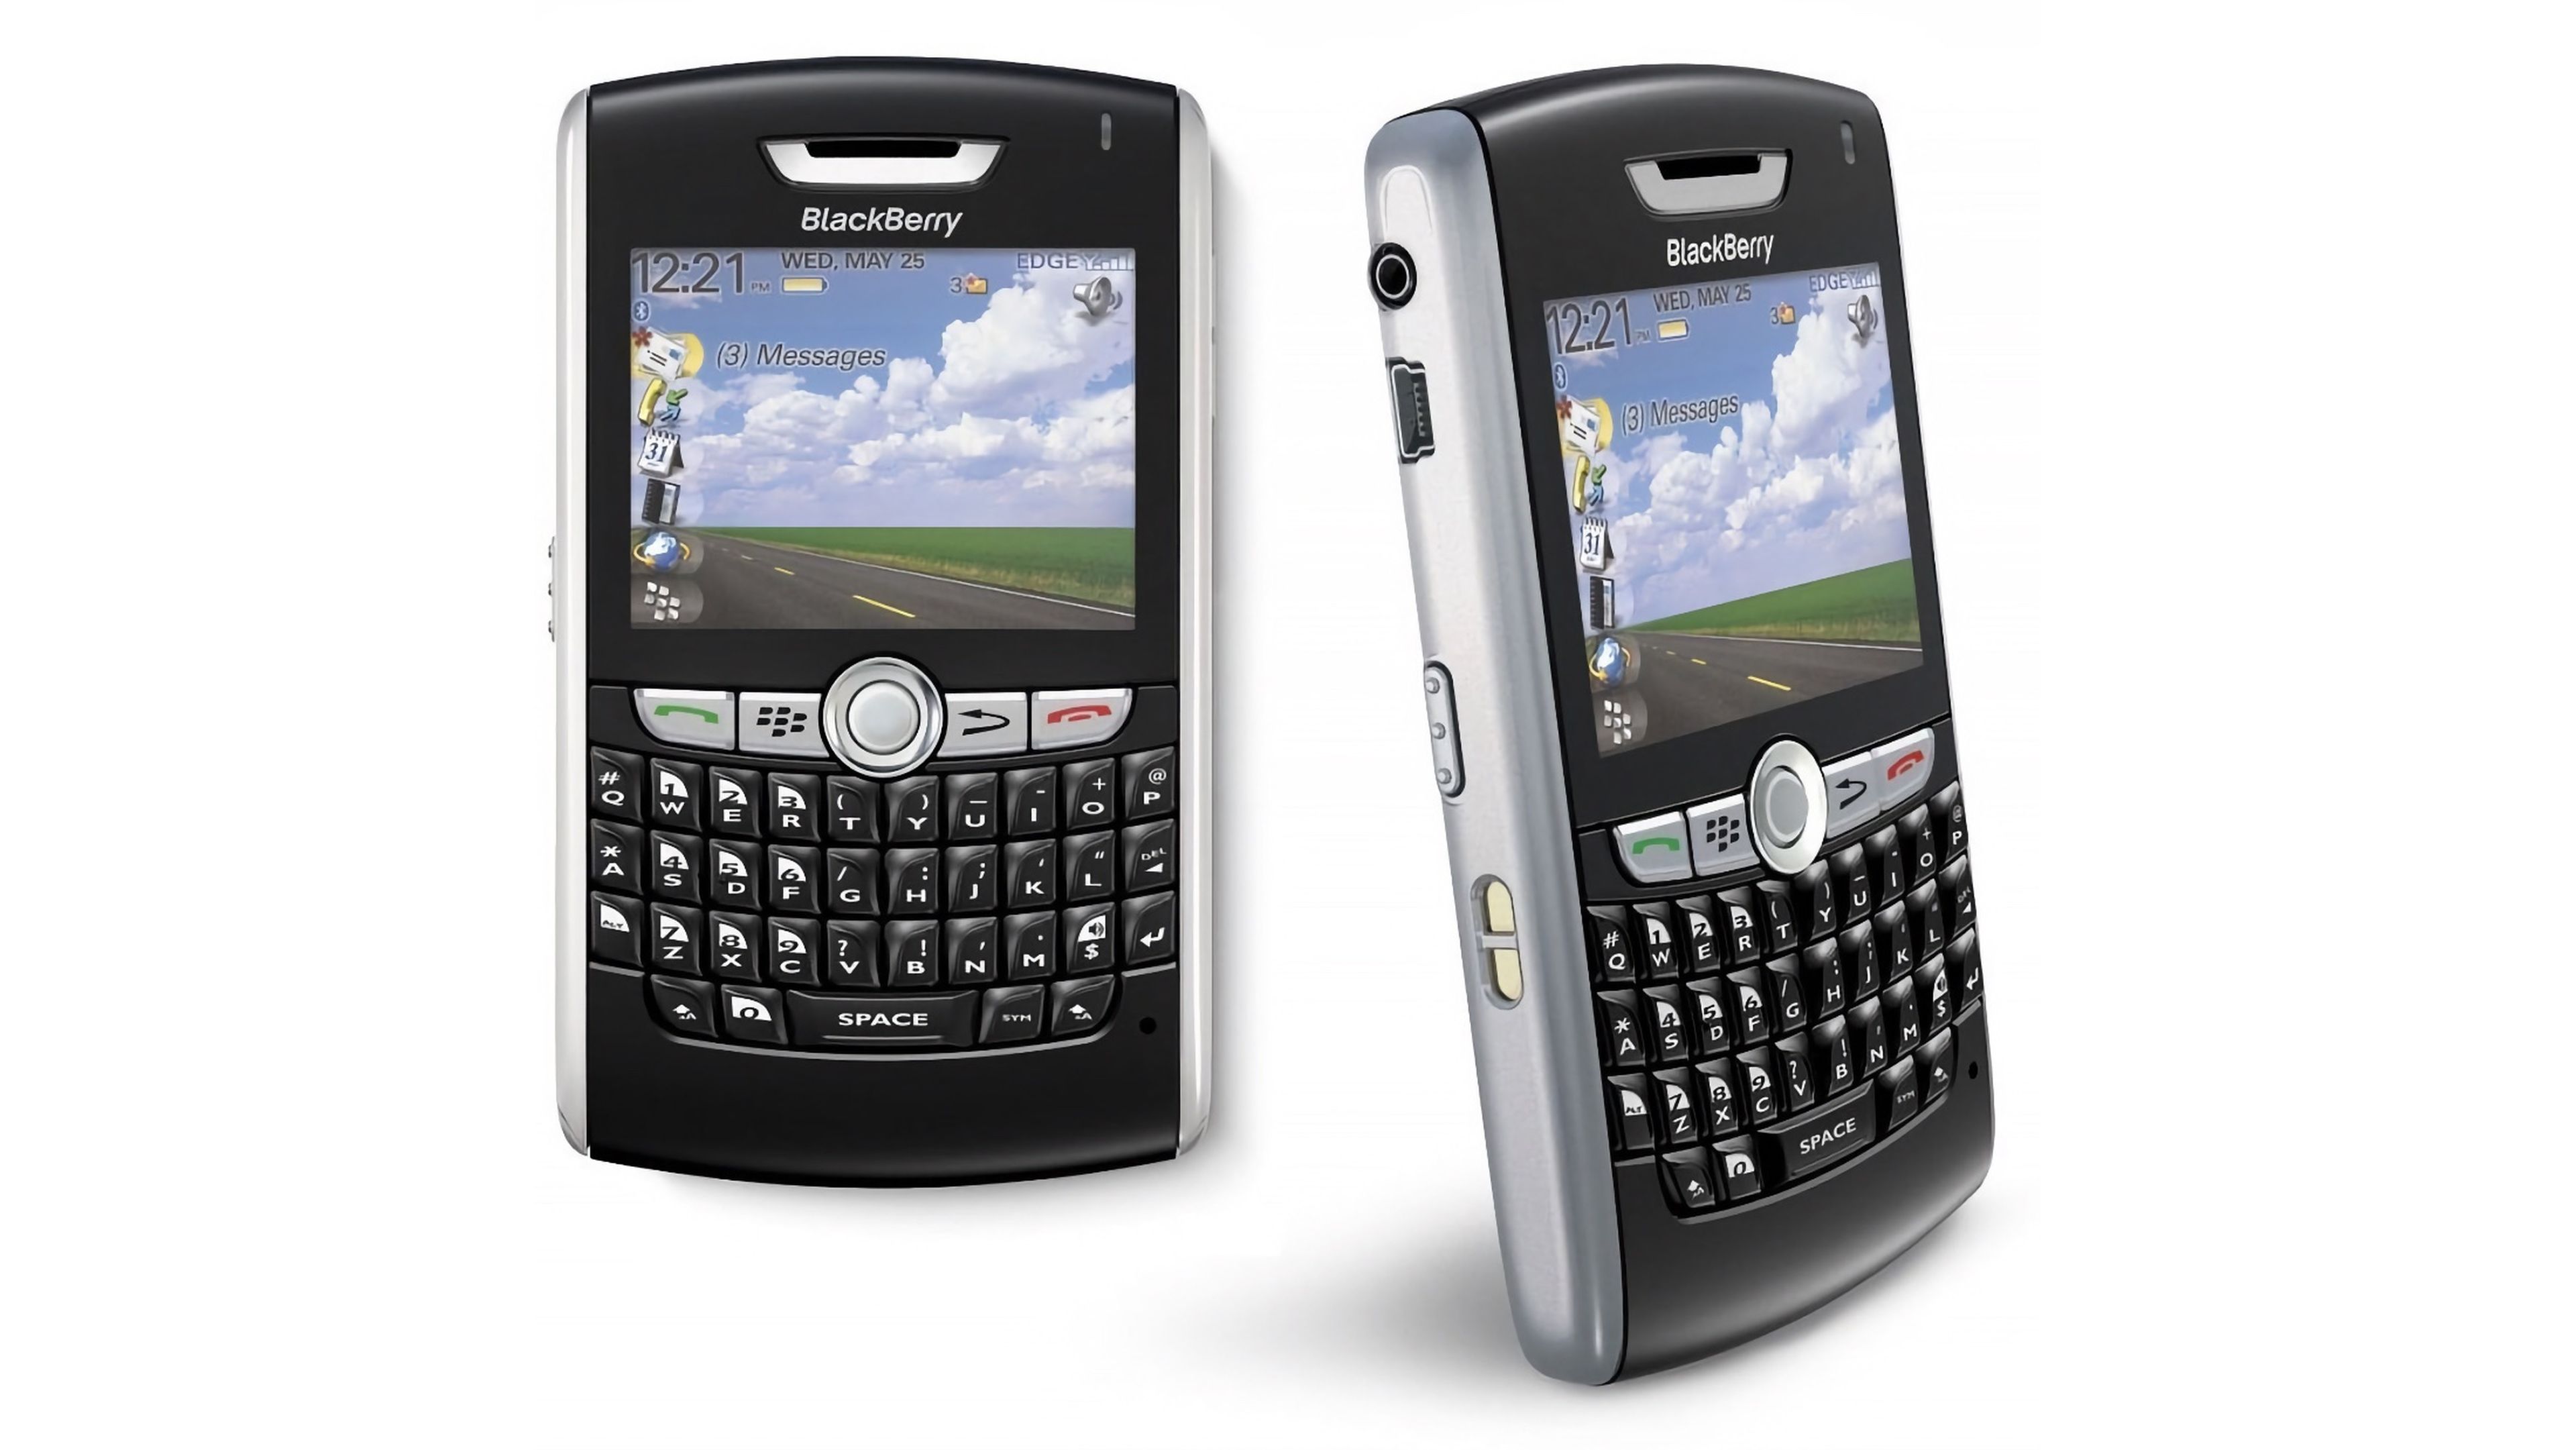 BlackBerry 8800, uno de sus modelos más populares lanzado en 2007.